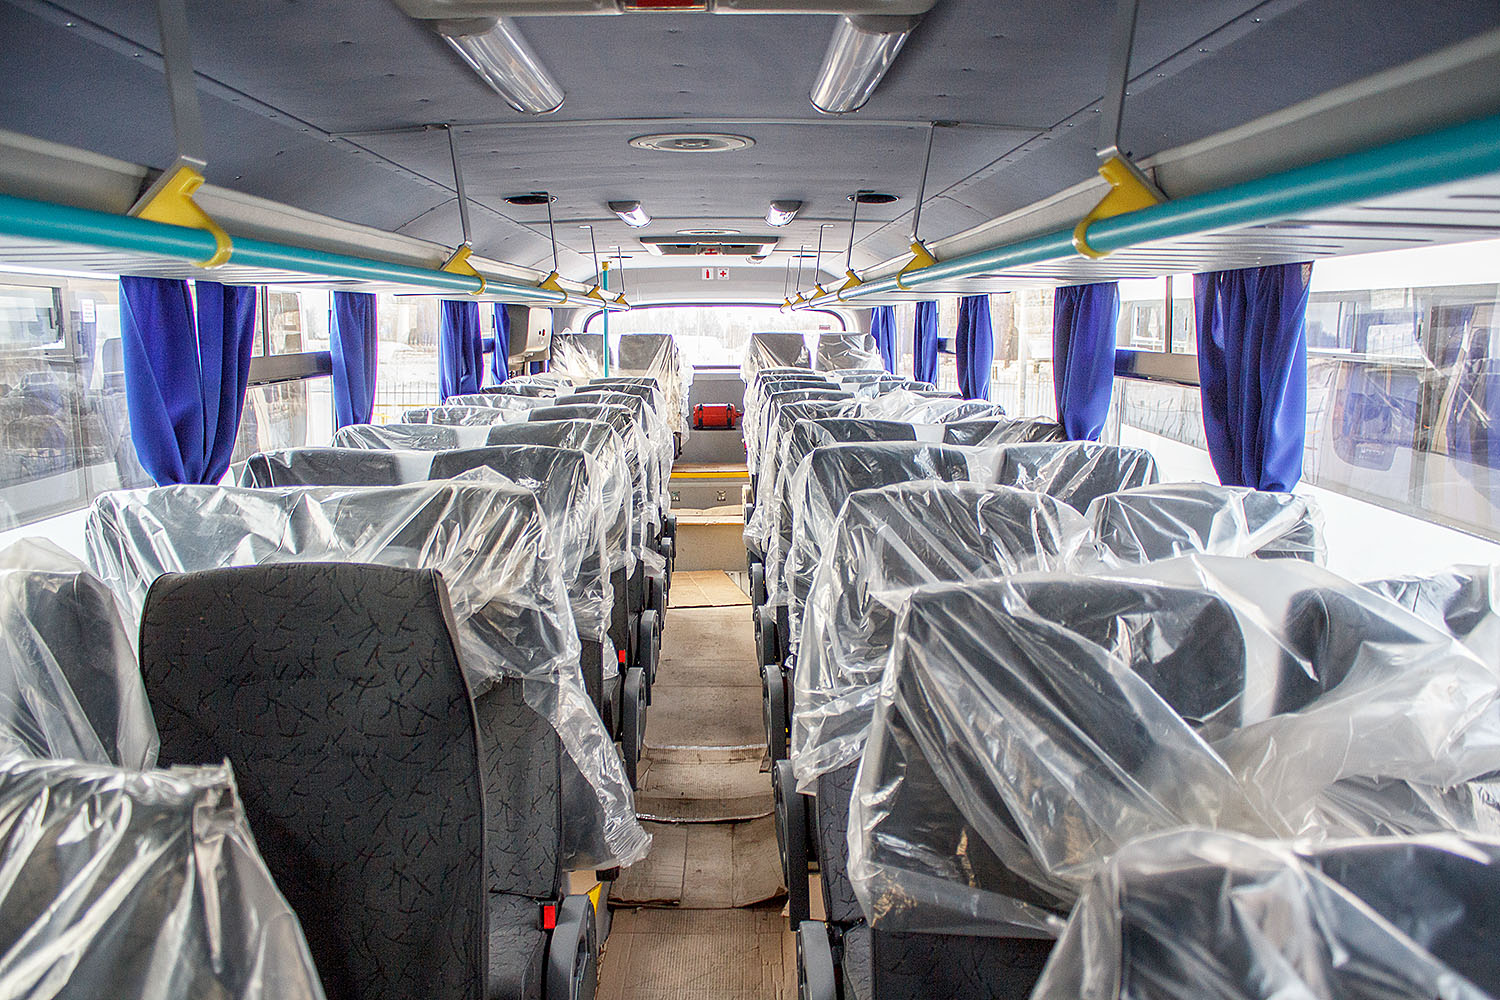 Осуществлена поставка на условиях лизинга 5 междугородних автобусов НЕФАЗ